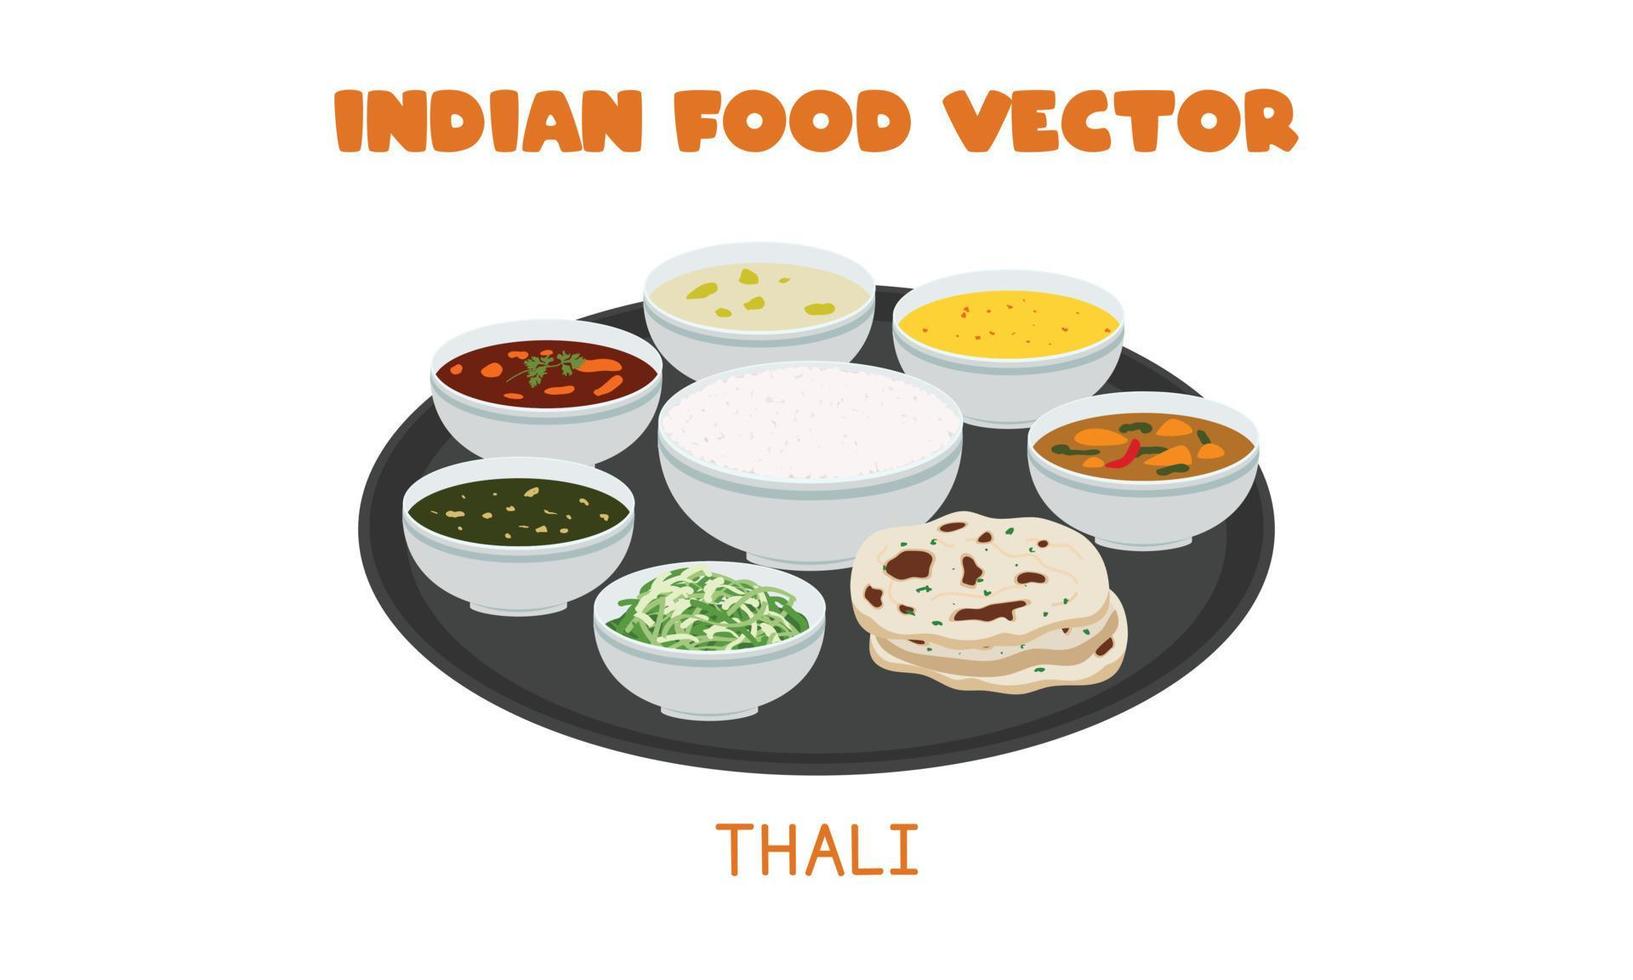 indisches thali - indisches berühmtes traditionelles essen mit naan und verschiedenen gerichten serviert auf flacher vektordesignillustration der platte, clipart-karikaturart. asiatisches Essen. indische Küche. Indisches Essen vektor